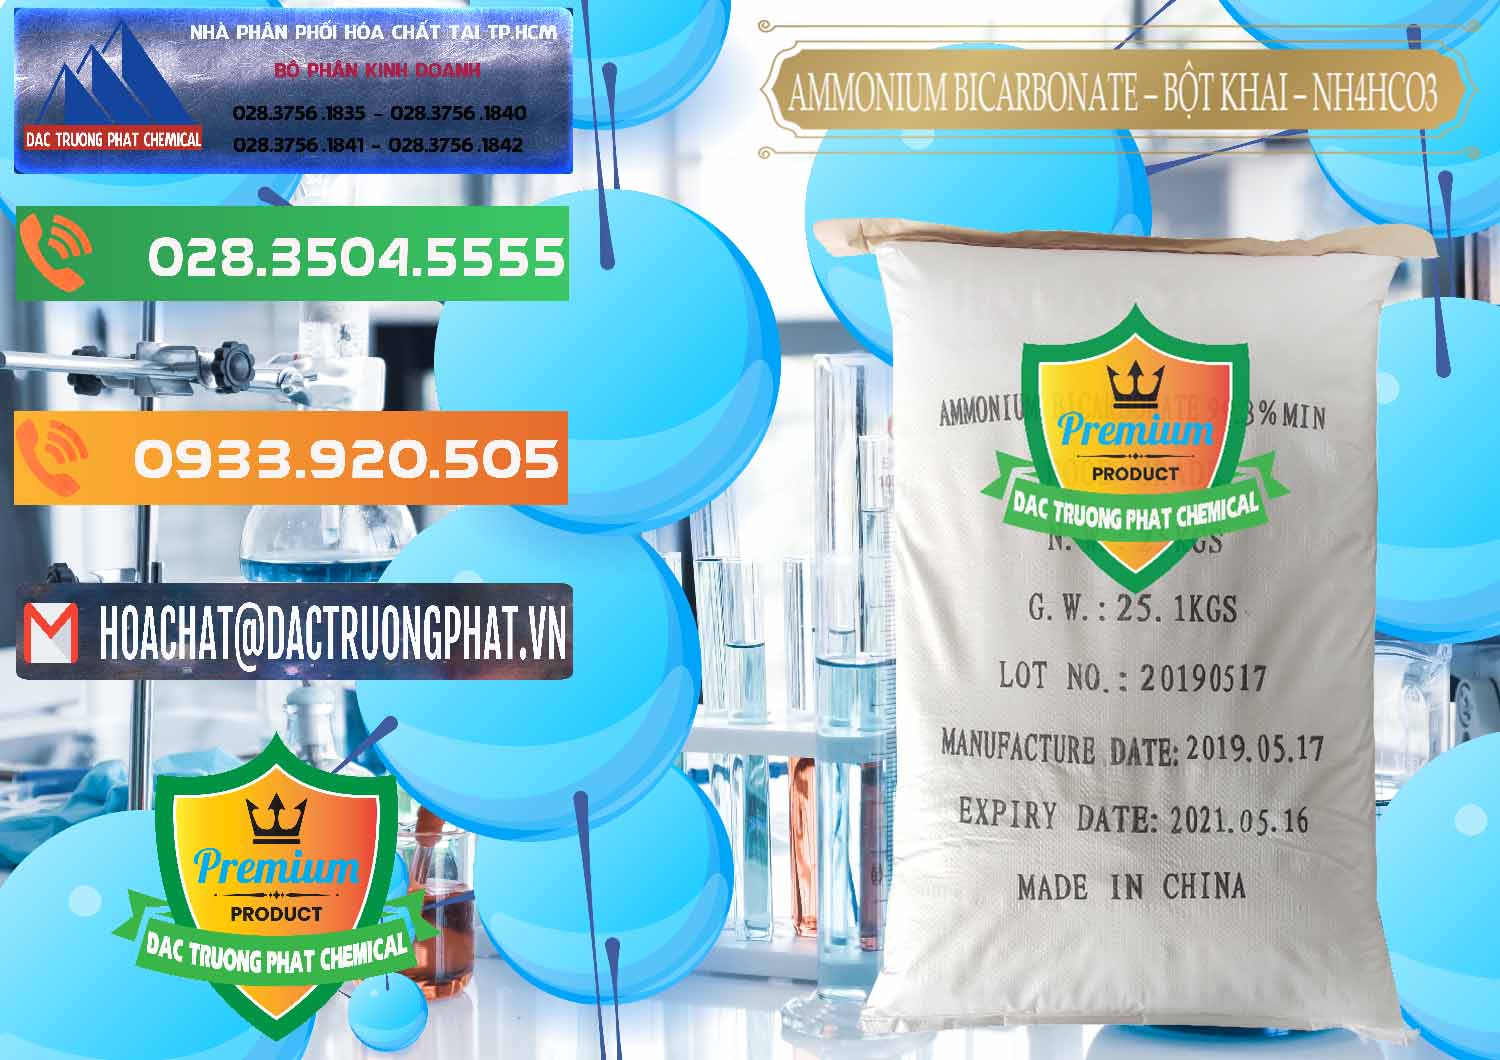 Công ty chuyên cung cấp và bán Ammonium Bicarbonate - Bột Khai Food Grade Trung Quốc China - 0018 - Cty nhập khẩu và cung cấp hóa chất tại TP.HCM - hoachatxulynuoc.com.vn